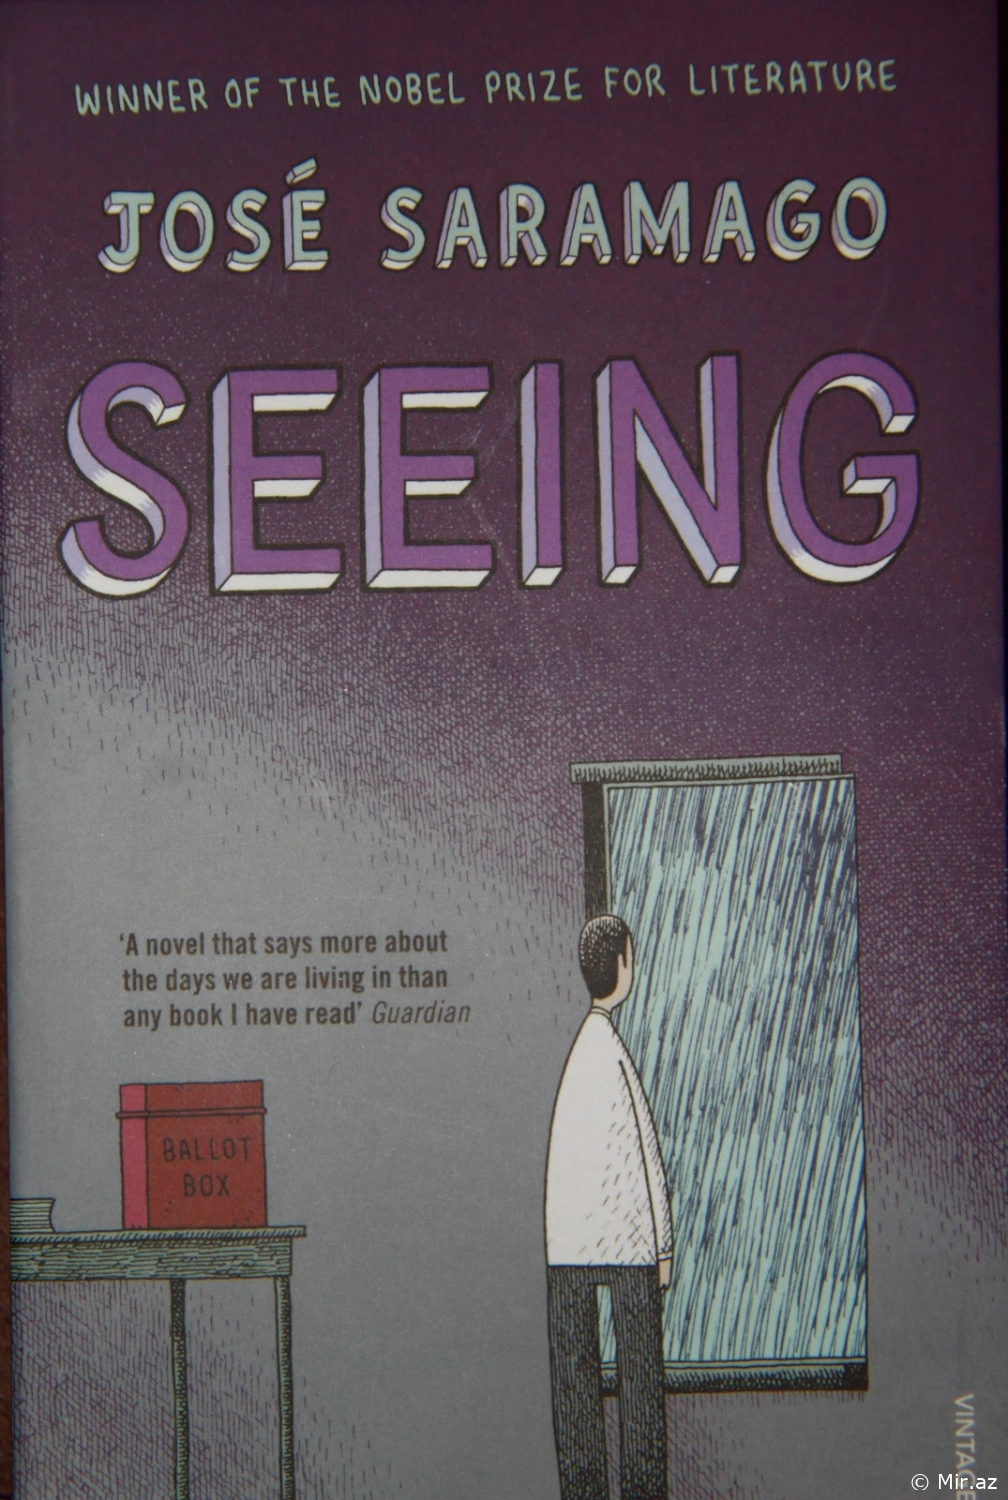 Saramago Jose "Seeing" PDF